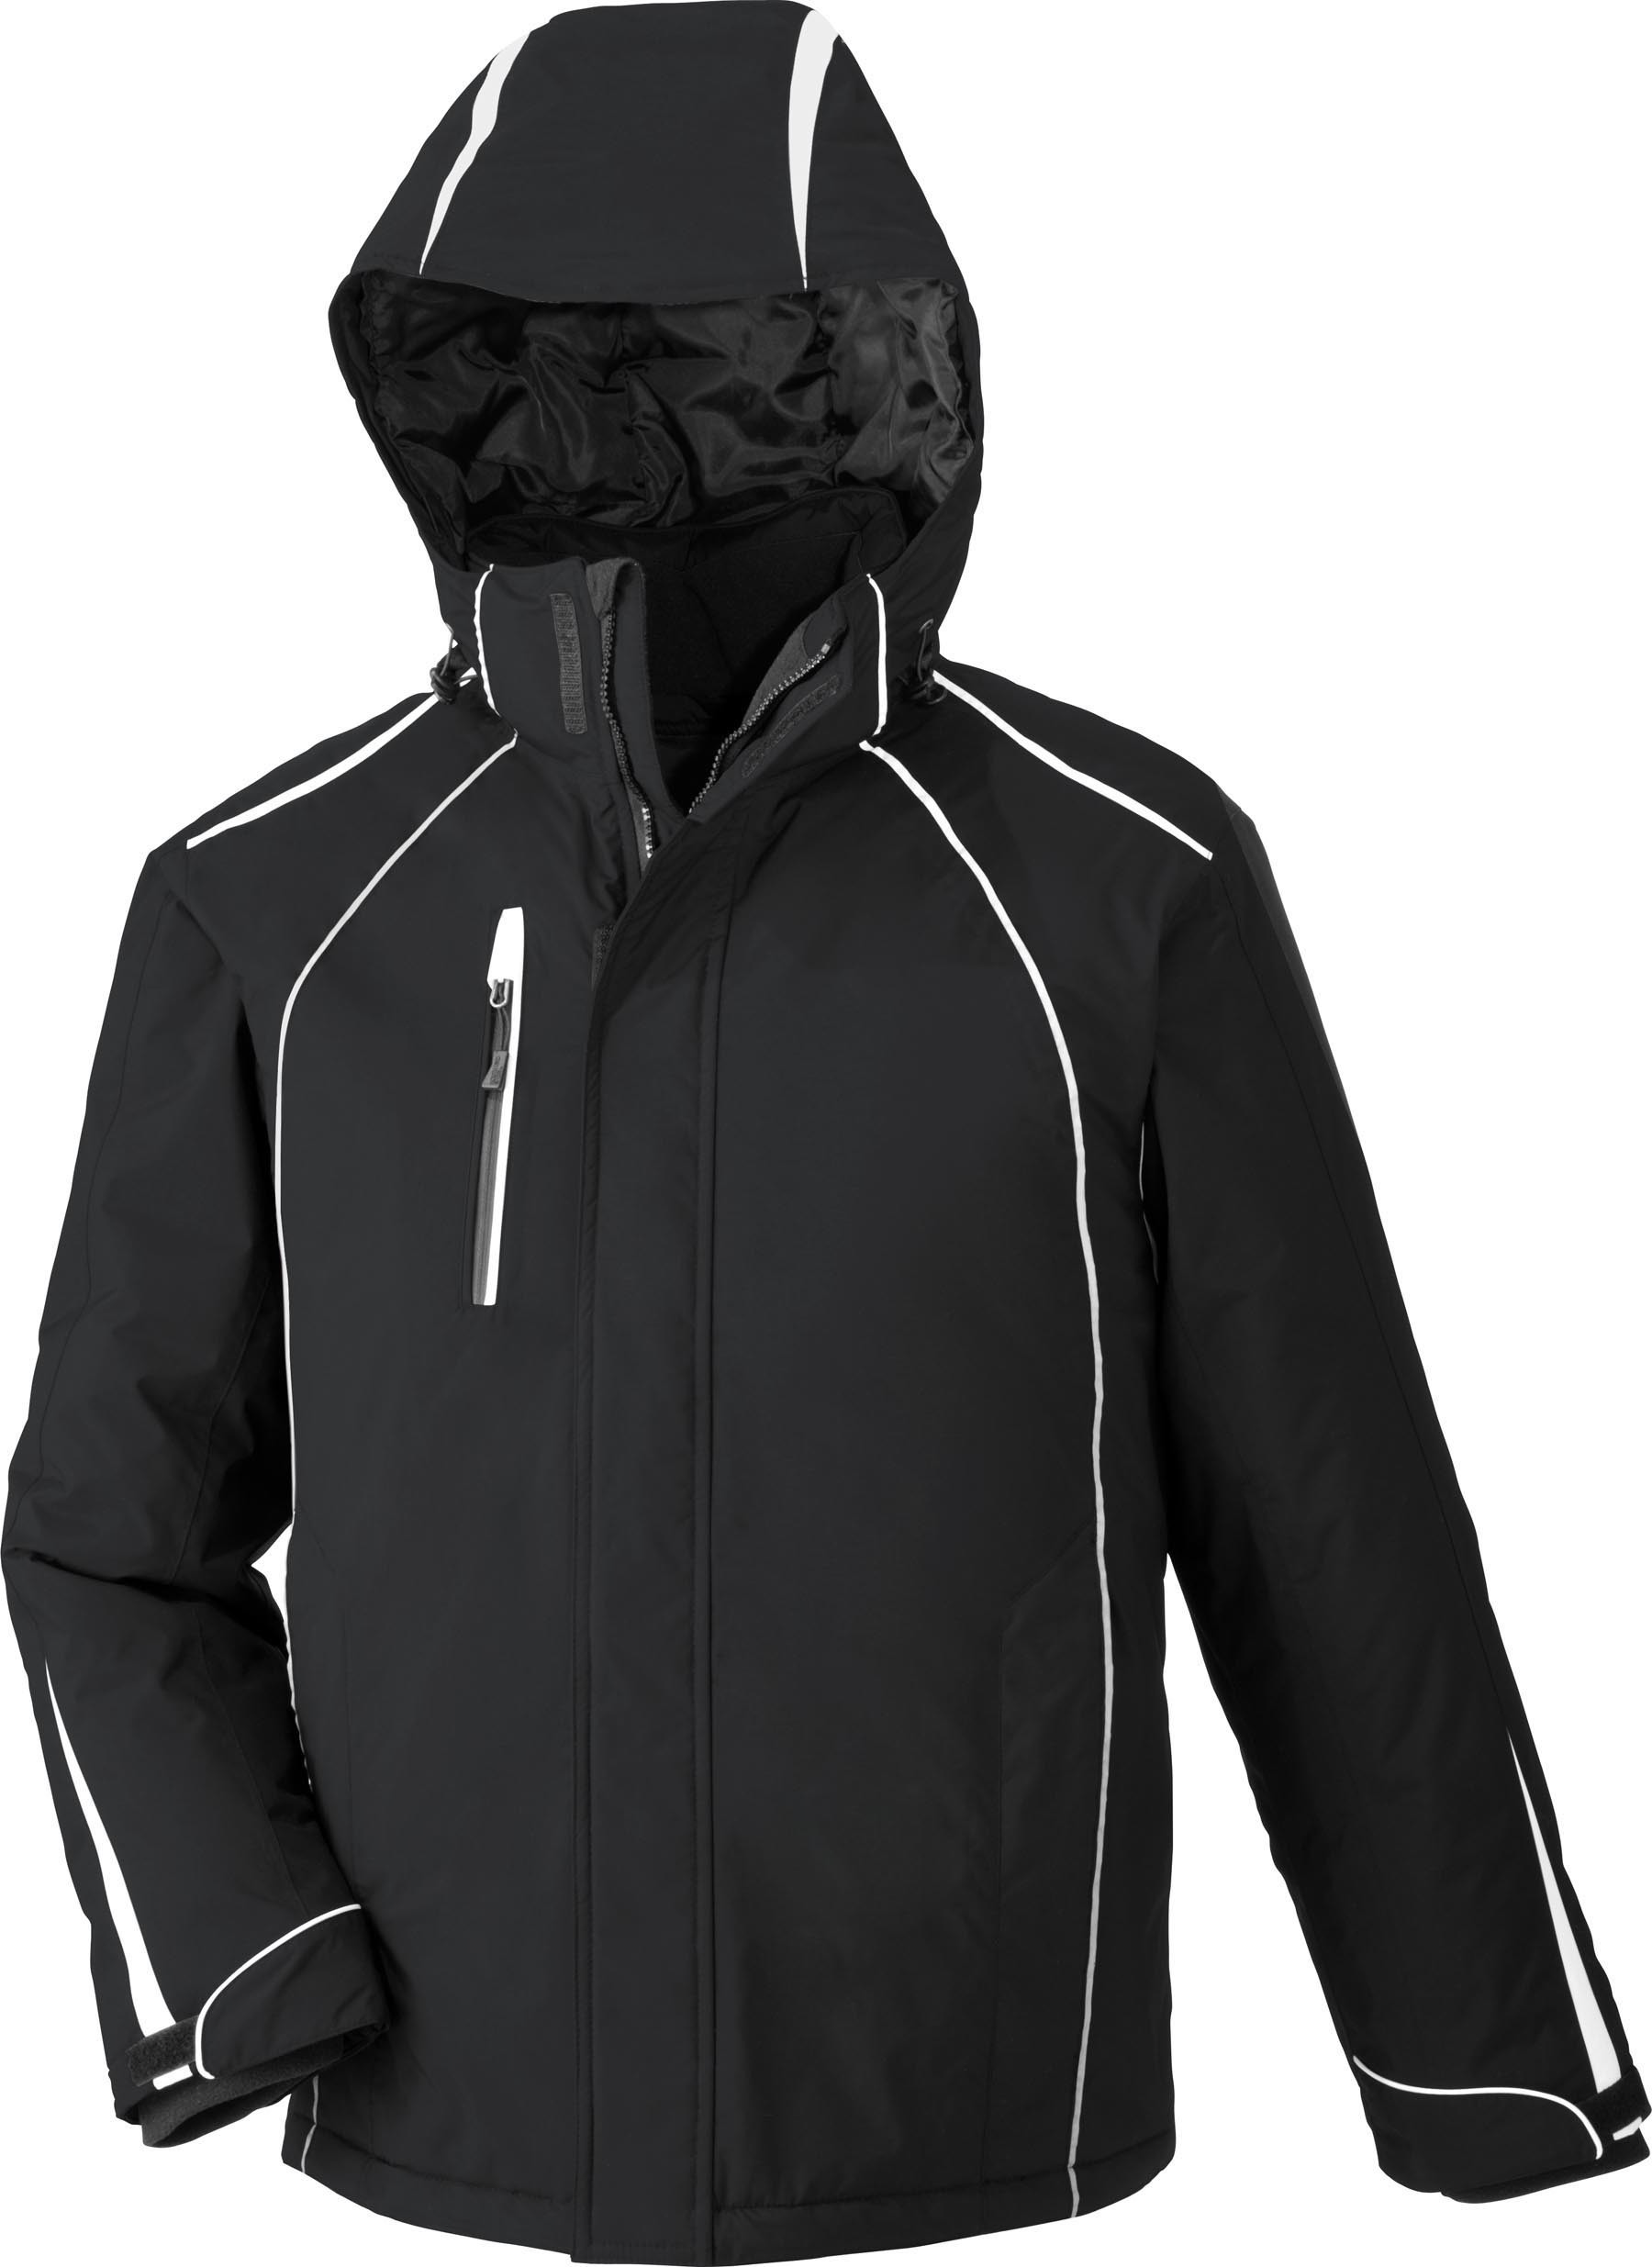 Ash City UTK 3 Warm.Logik 88652 - Altitude Men's Seam-Sealed Insulated Jacket